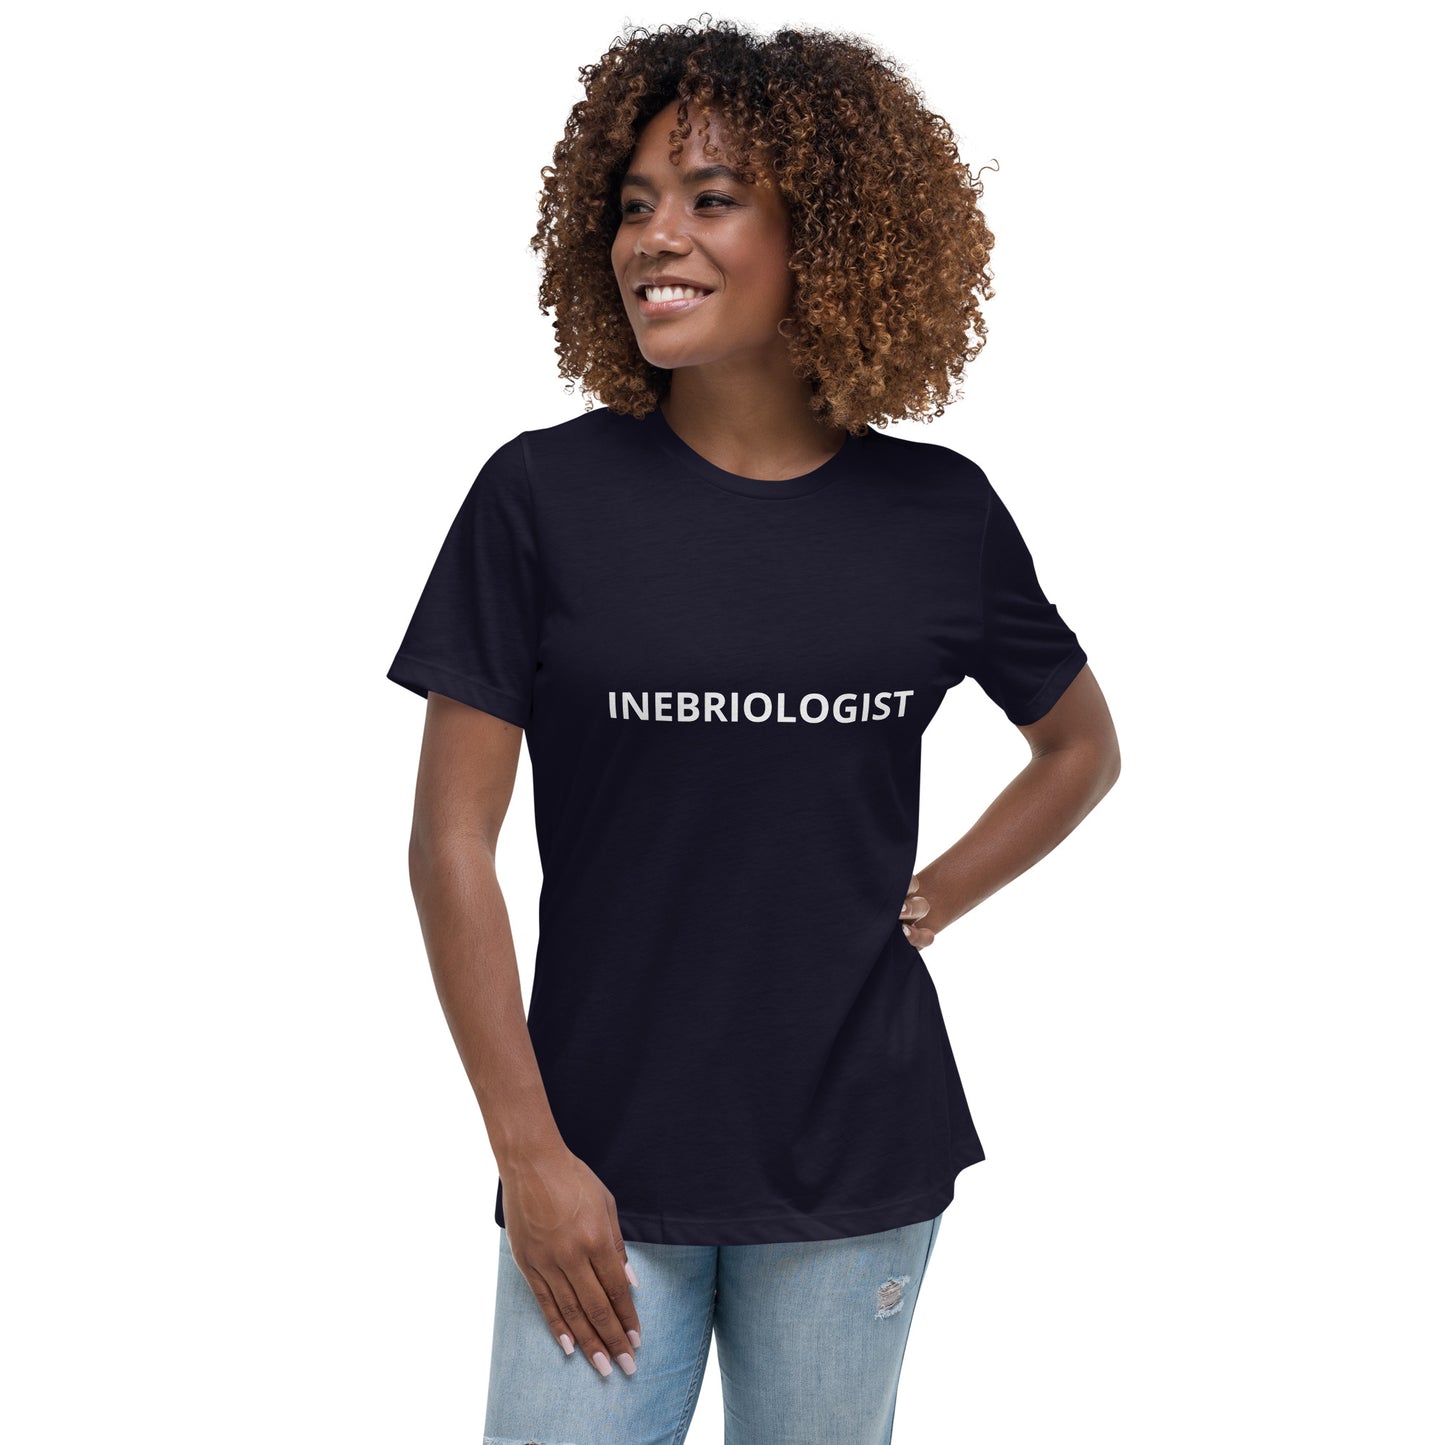 INEBRIOLOGIST Women's Relaxed T-Shirt